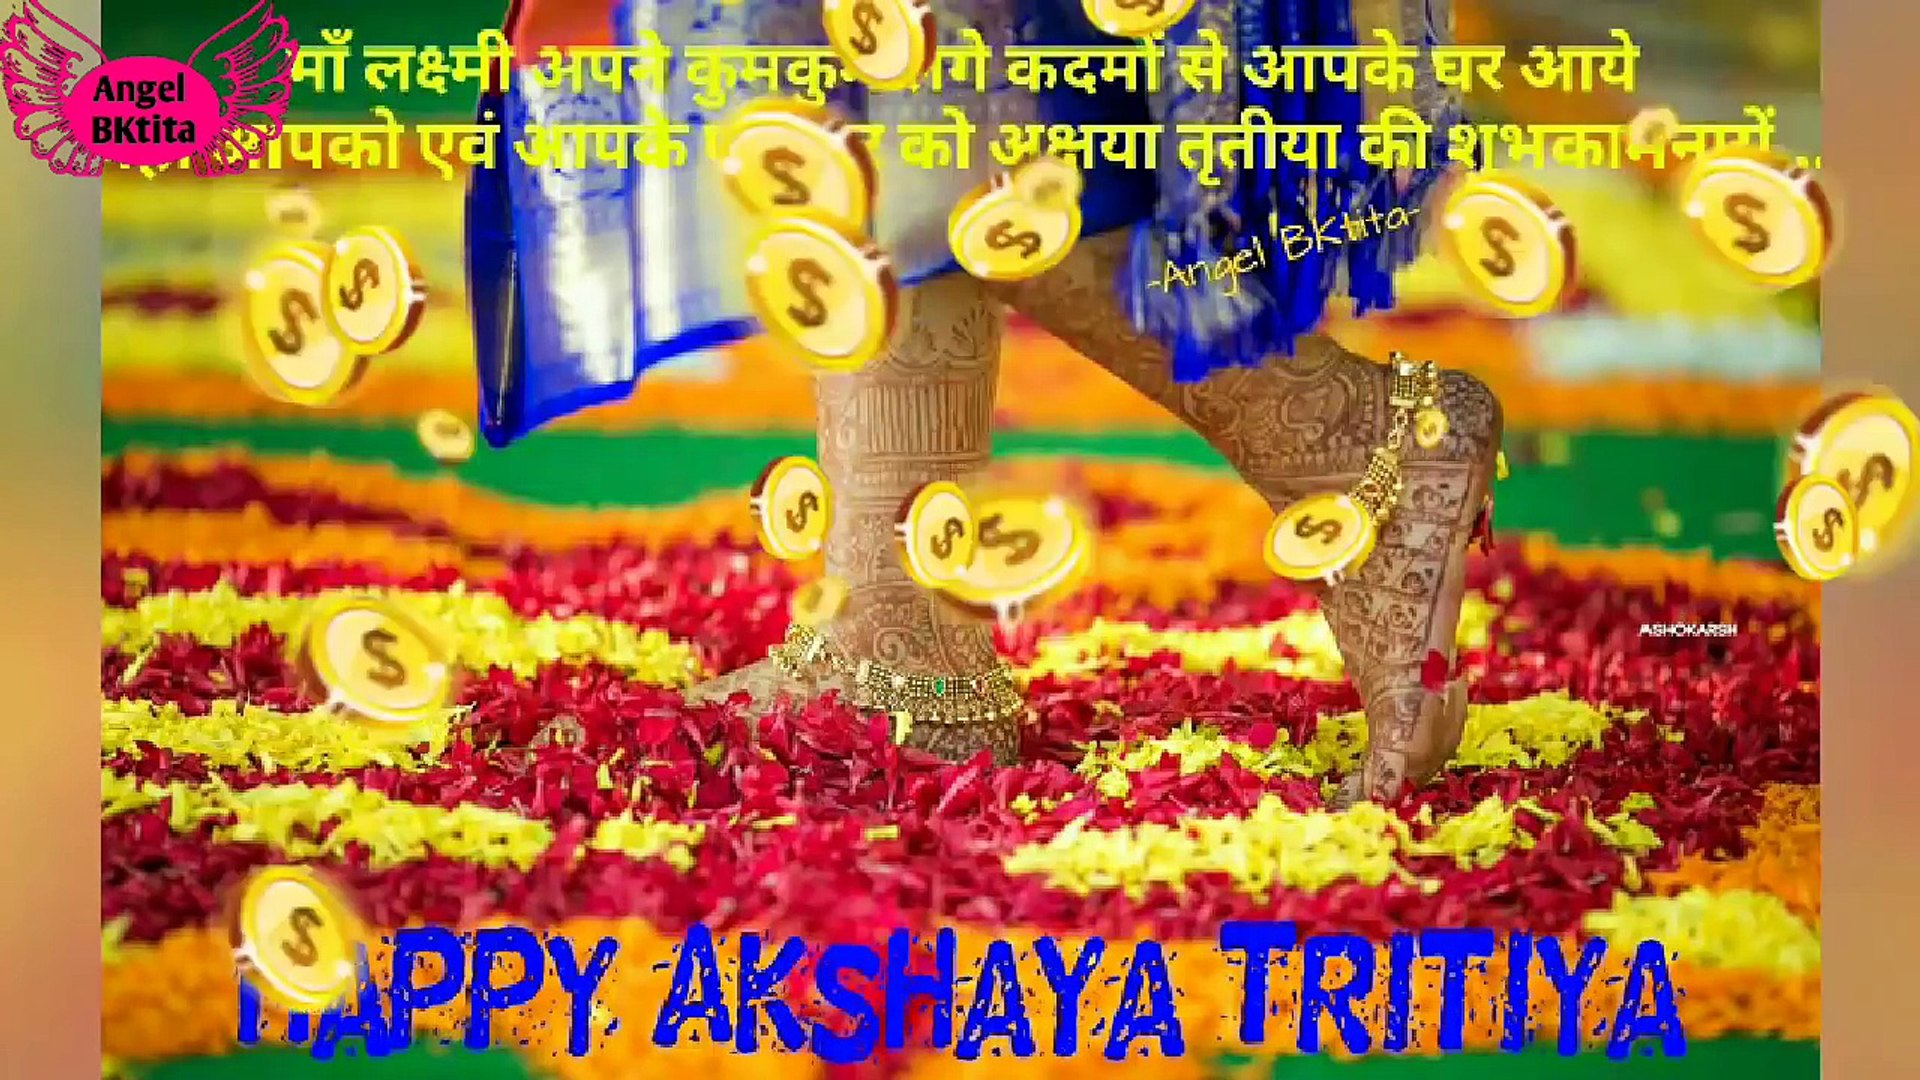 Happy Akshaya Tritiya Wishes 2018, Whatsapp Status Video, Best WhatsApp  Status whatsapp video, whatsapp status, whatsapp love status video, love  status, sad status, whatsapp dp love status, sad status, romantic status,  old